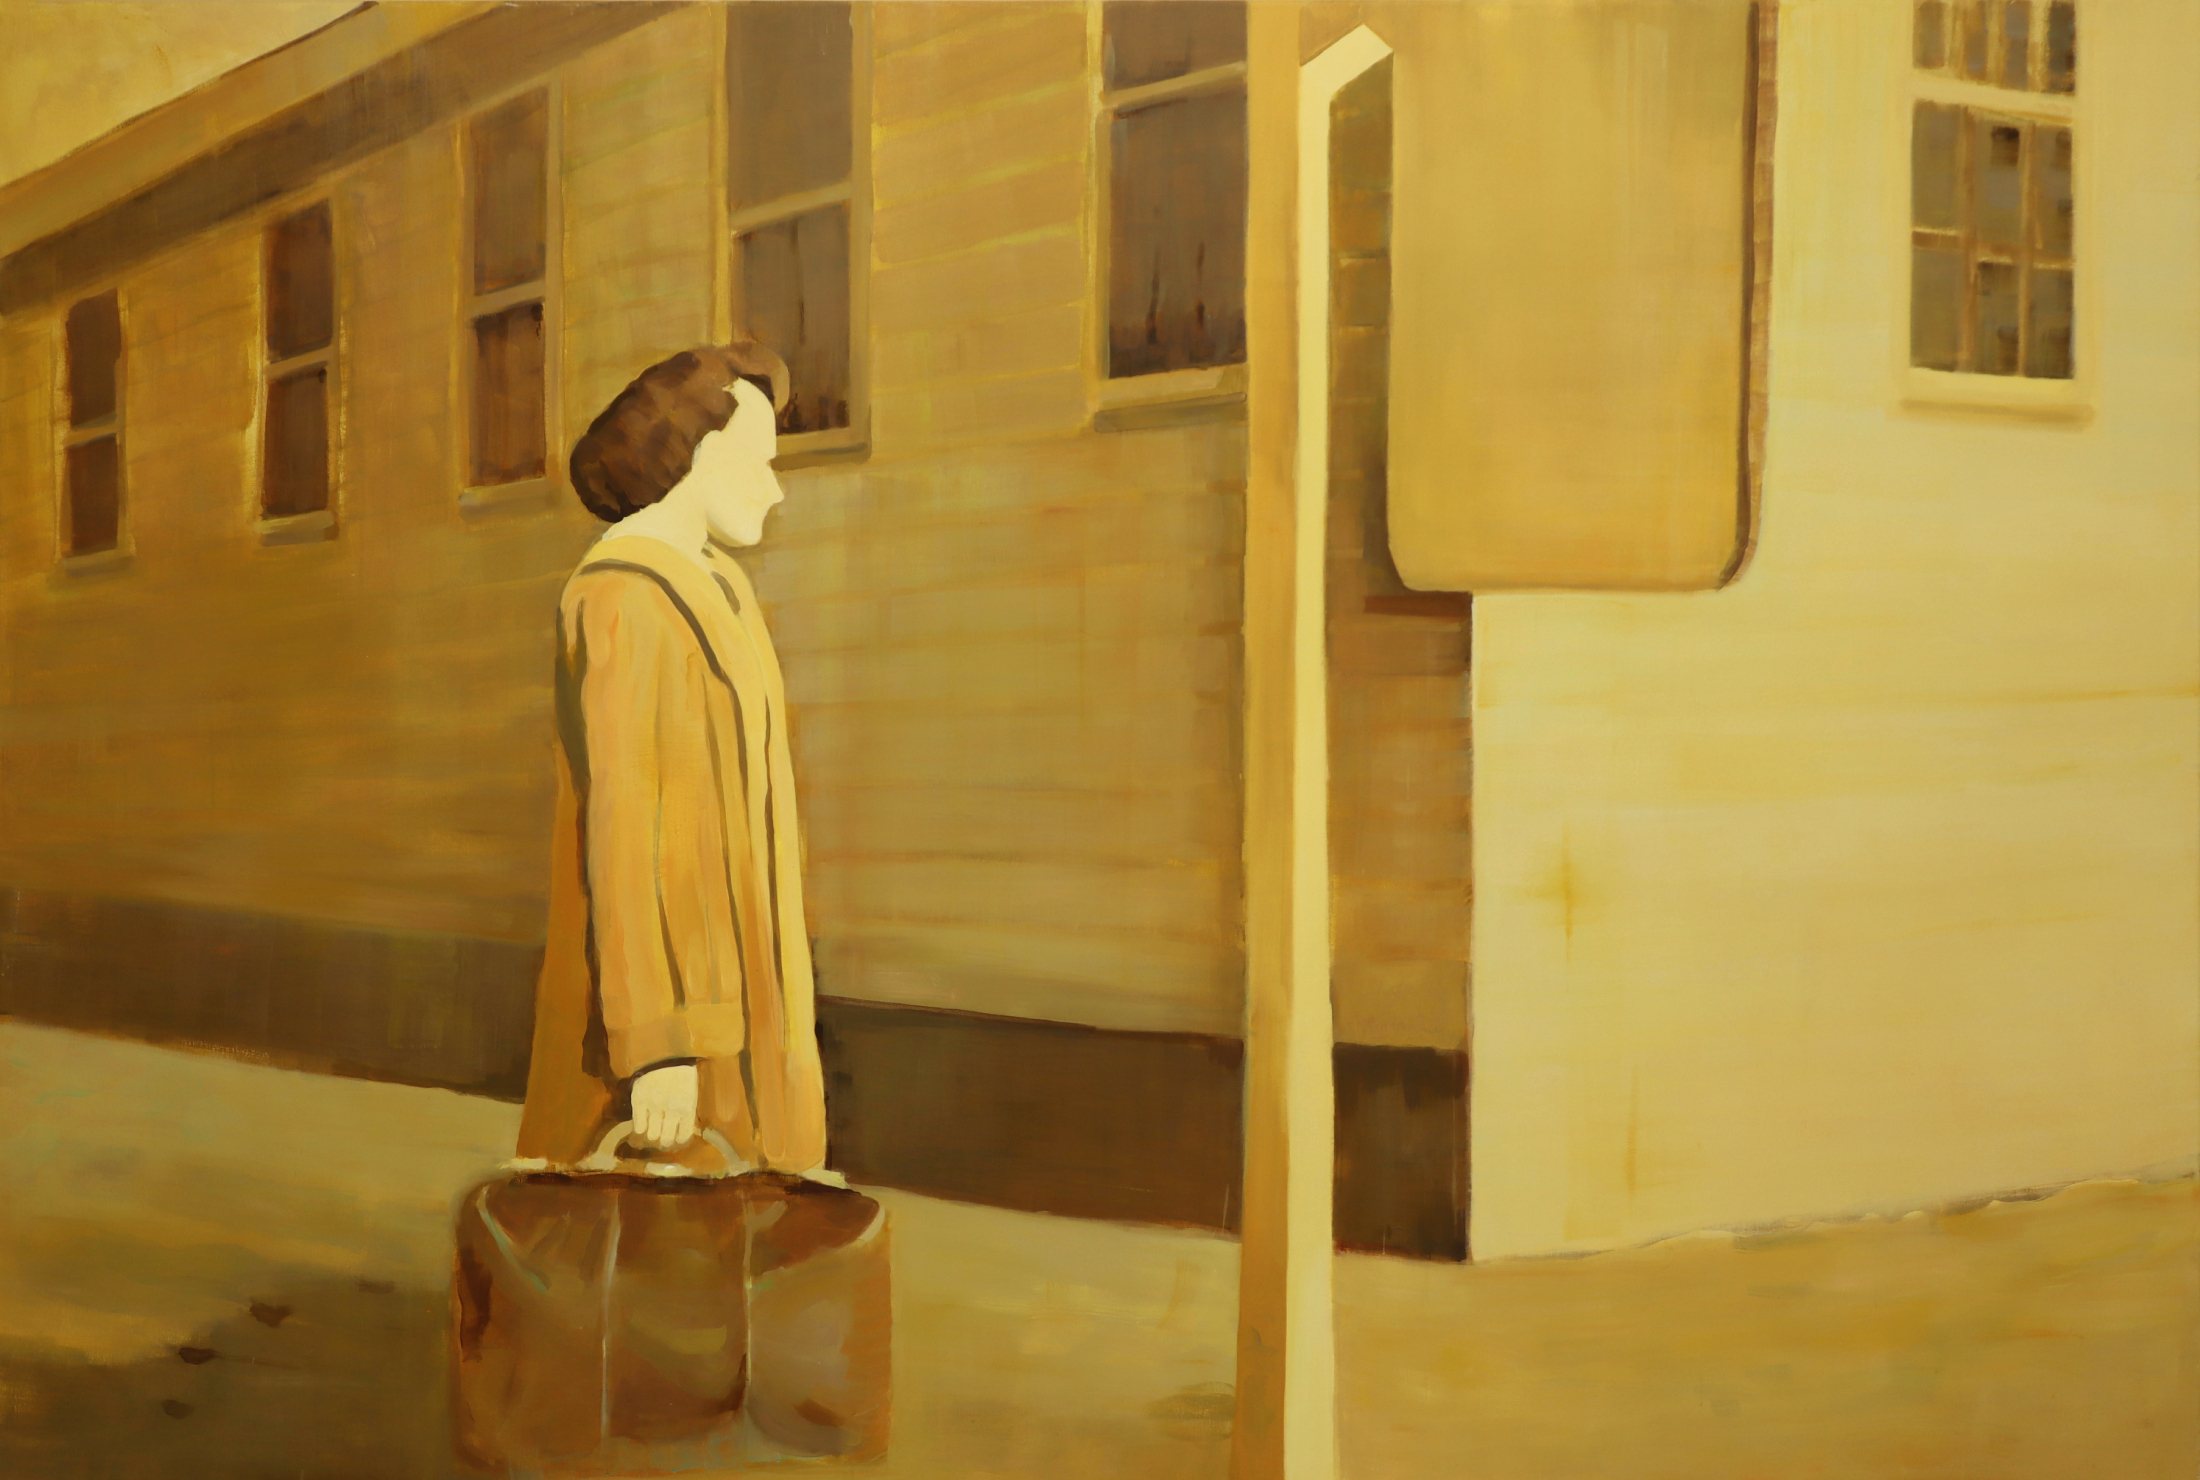 Η εκδρομή: Έκθεση ζωγραφικής της Χριστίνας Κάλμπαρη στο Κέντρο Τεχνών Δήμου Αθηναίων